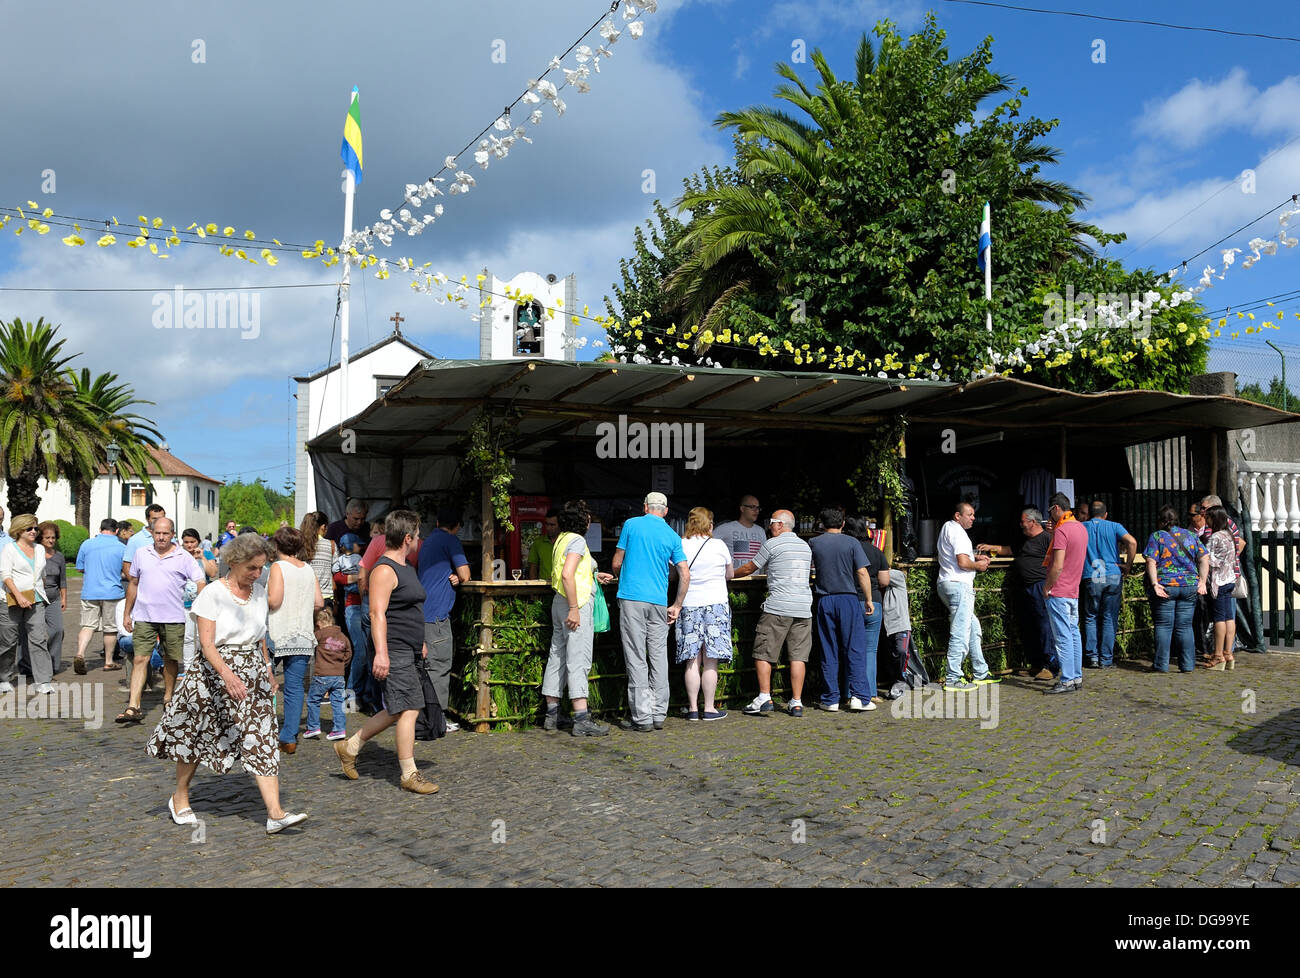 Madeira Portugal Outdoor Bar At The Santo De Serra Cider Festival Stock Photo Alamy